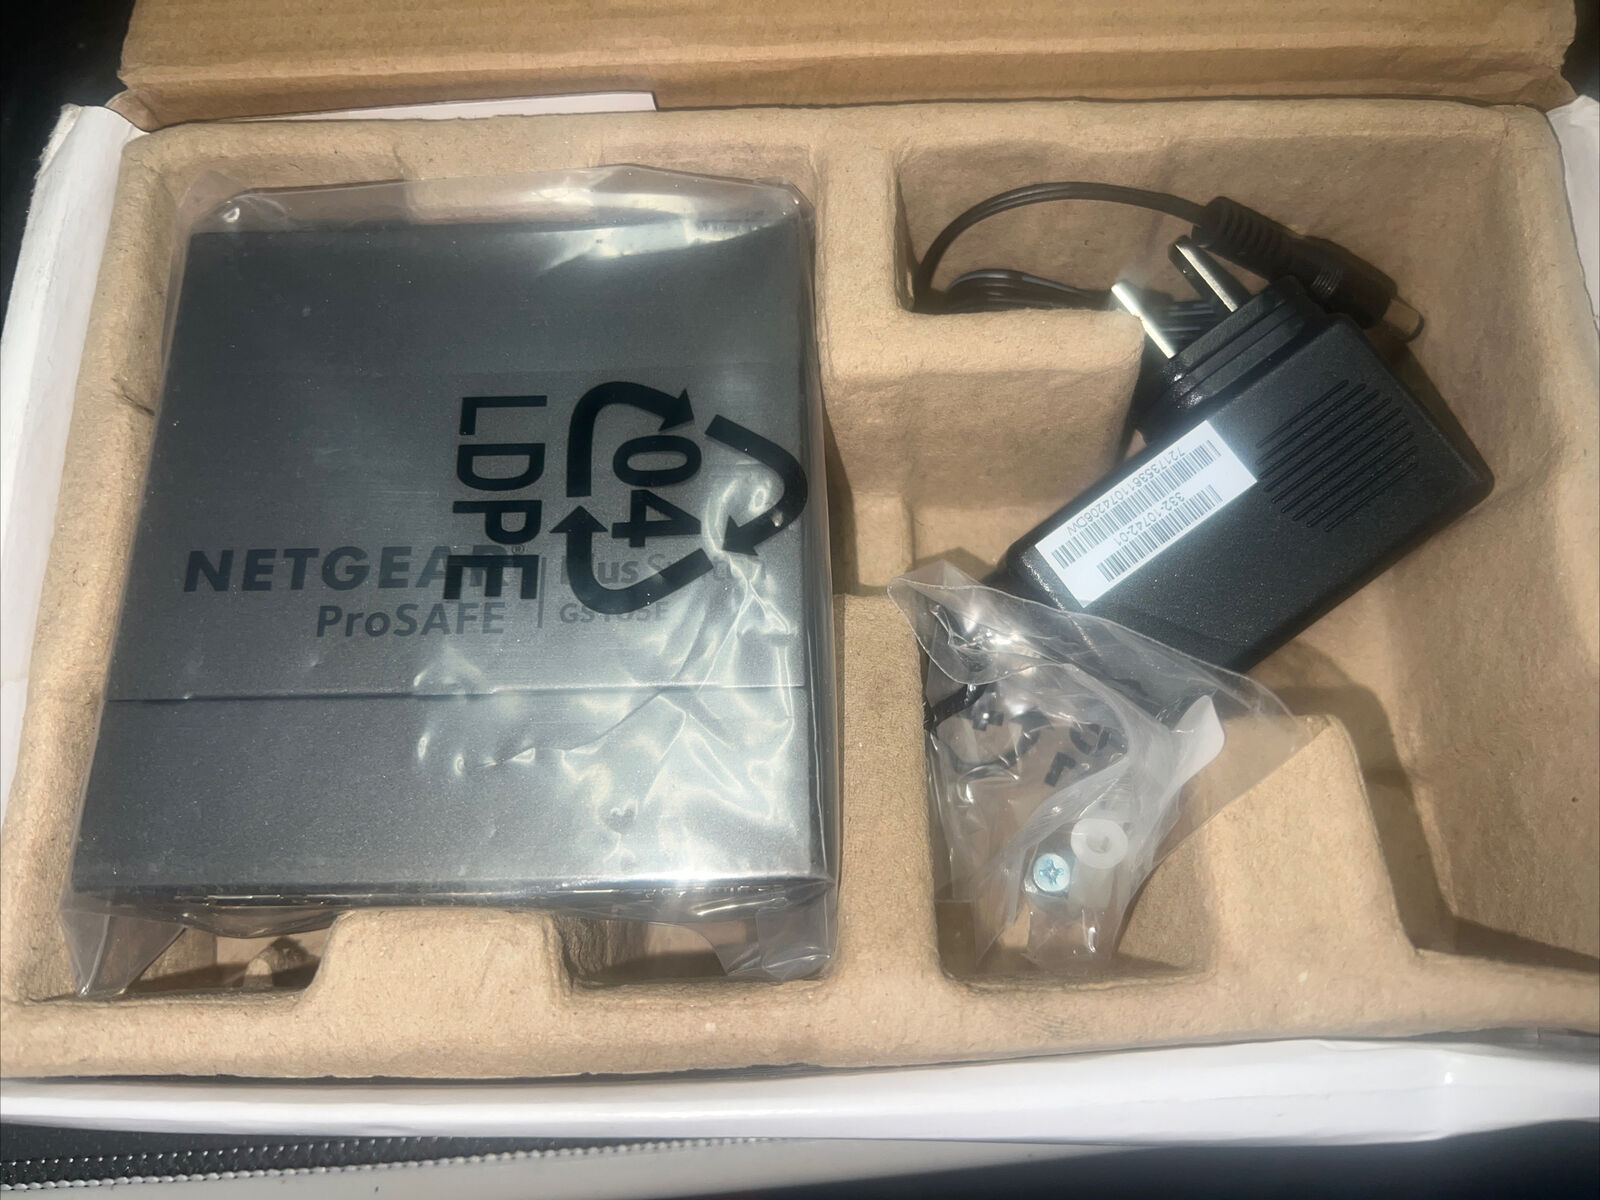 NEW NETGEAR ProSAFE GS105Ev2 5 Port Gigabit Web Managed Opened Box